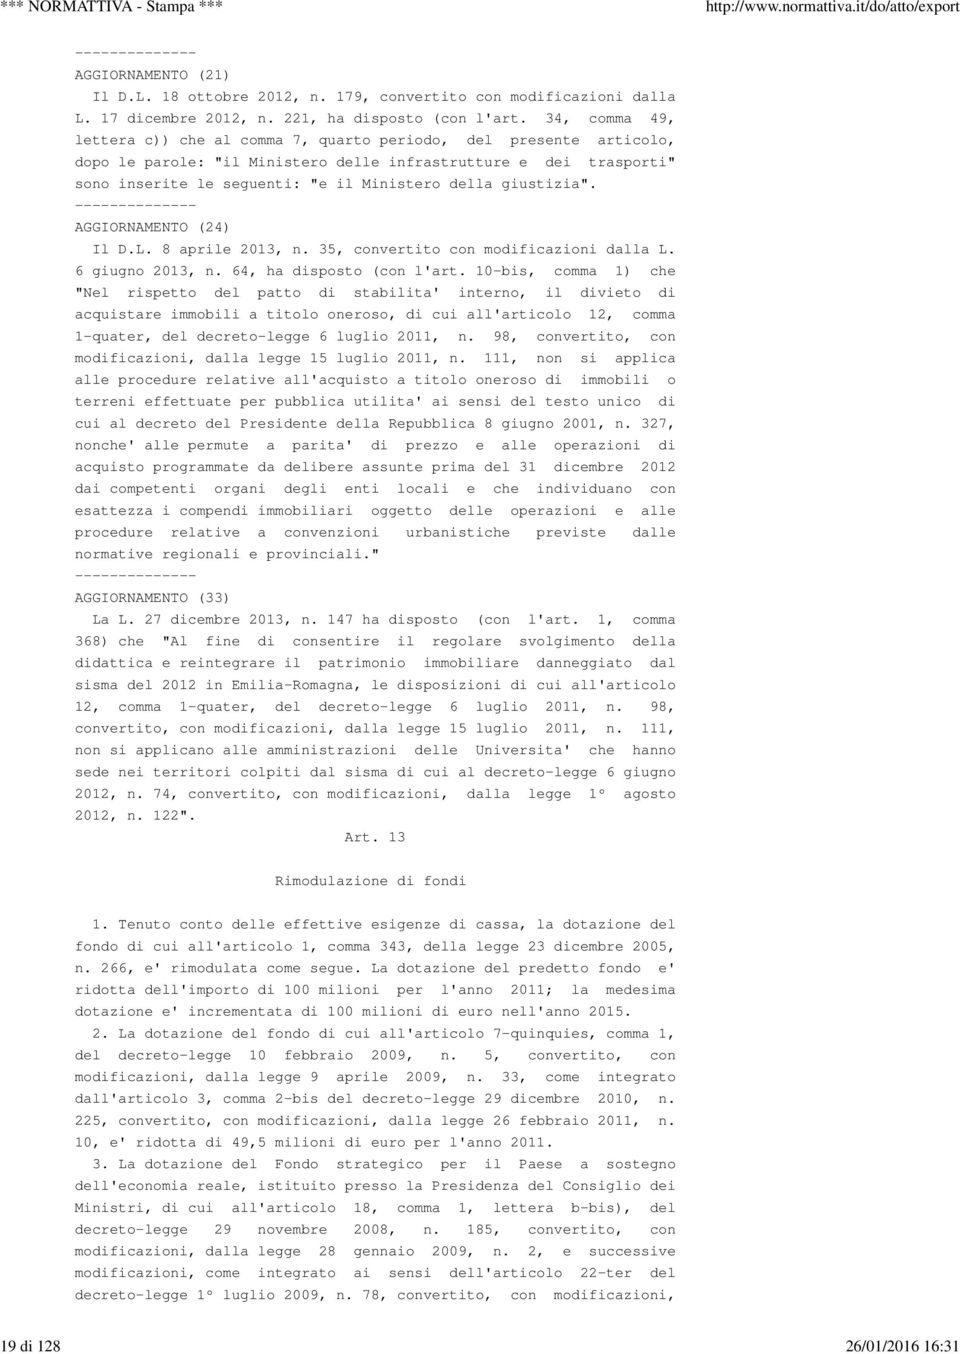 giustizia". -------------- AGGIORNAMENTO (24) Il D.L. 8 aprile 2013, n. 35, convertito con modificazioni dalla L. 6 giugno 2013, n. 64, ha disposto (con l'art.